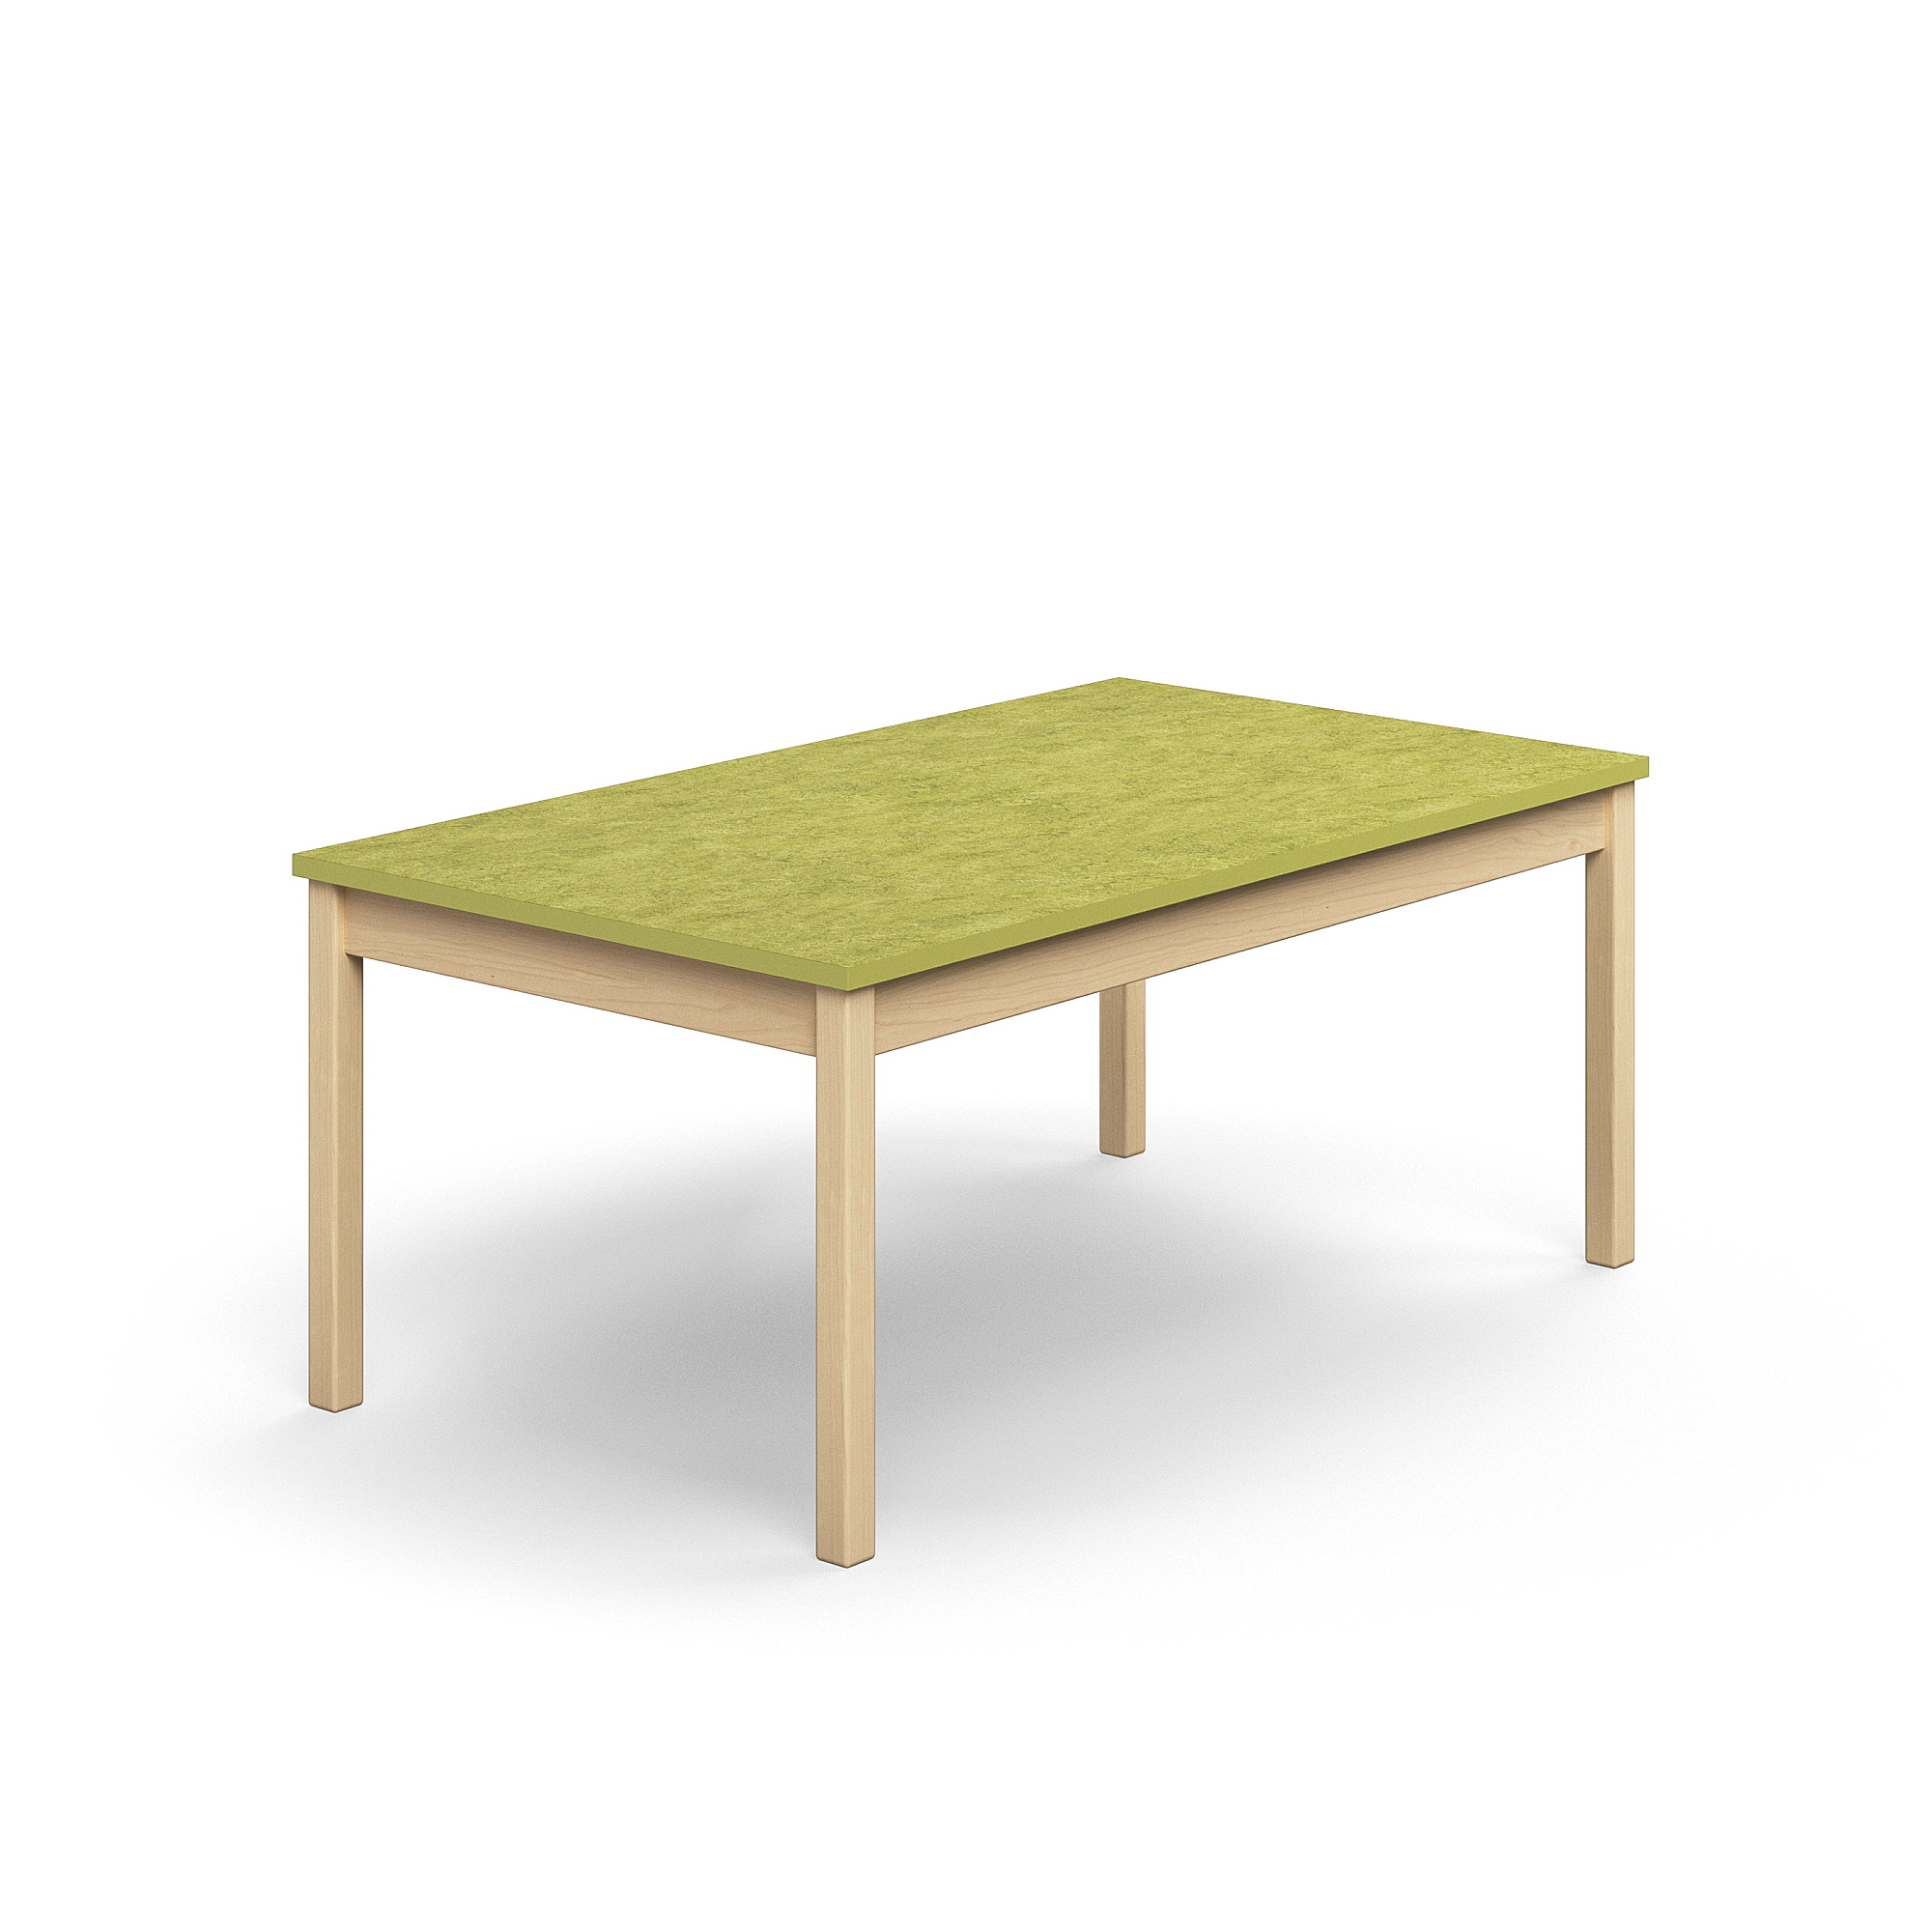 Stůl DECIBEL, 1400x800x590 mm, akustické linoleum, bříza/limetkově zelená